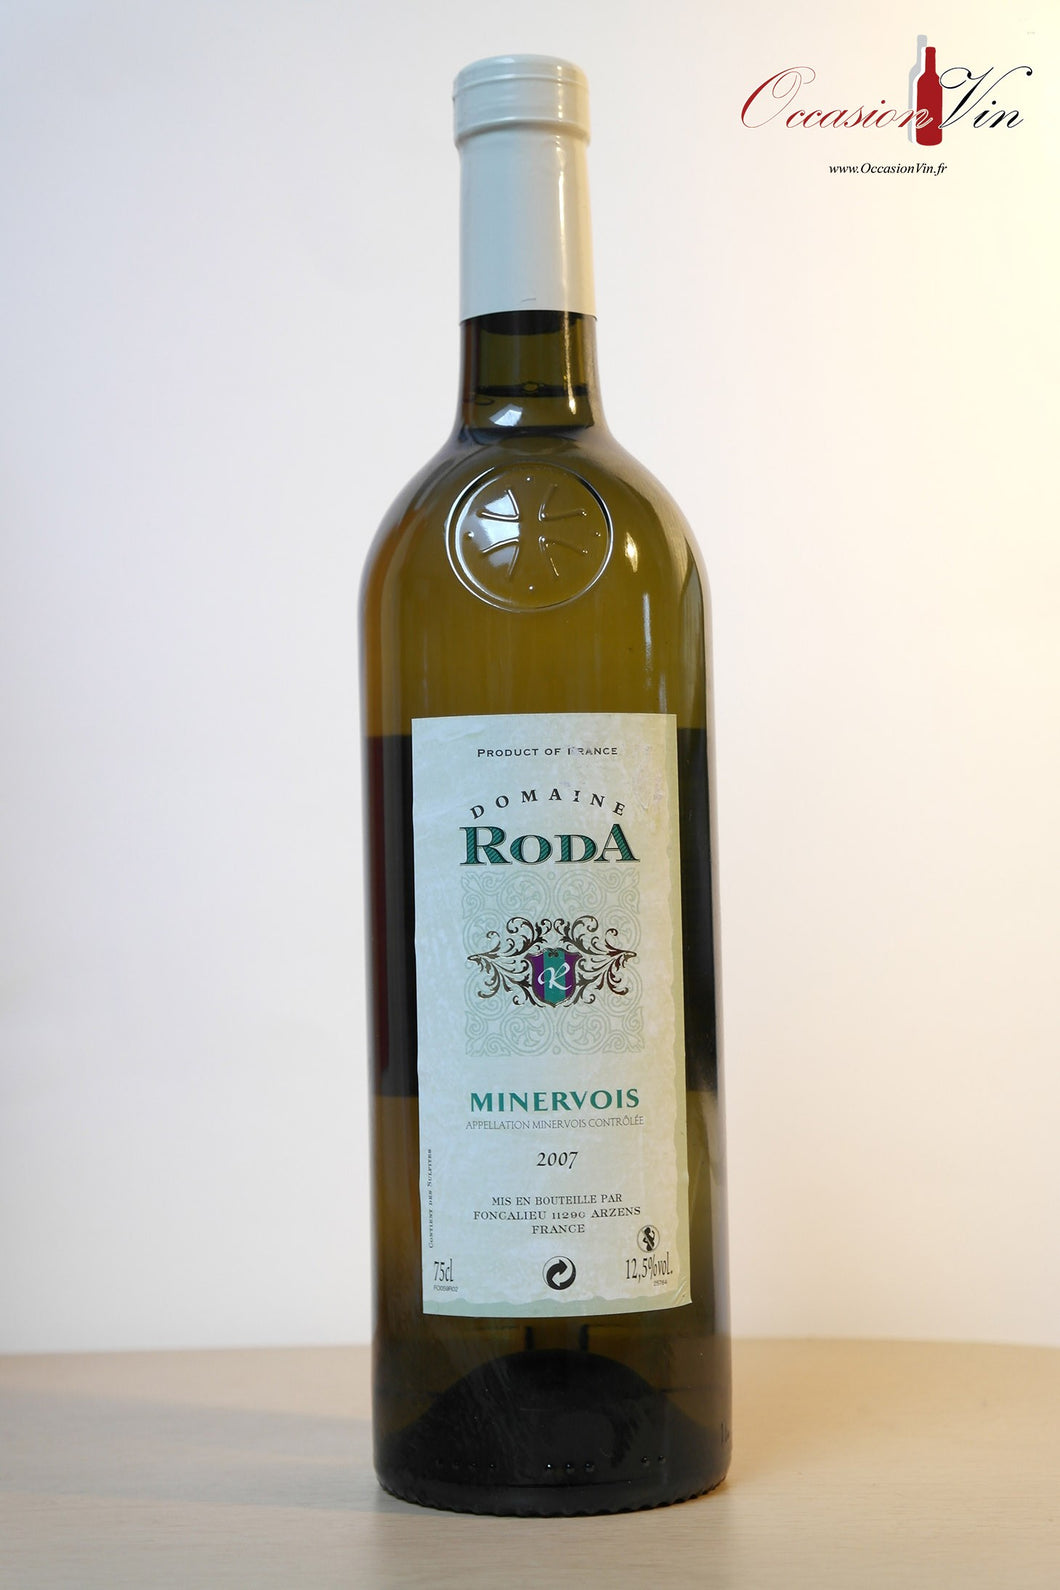 Domaine Roda Minervois Vin 2007